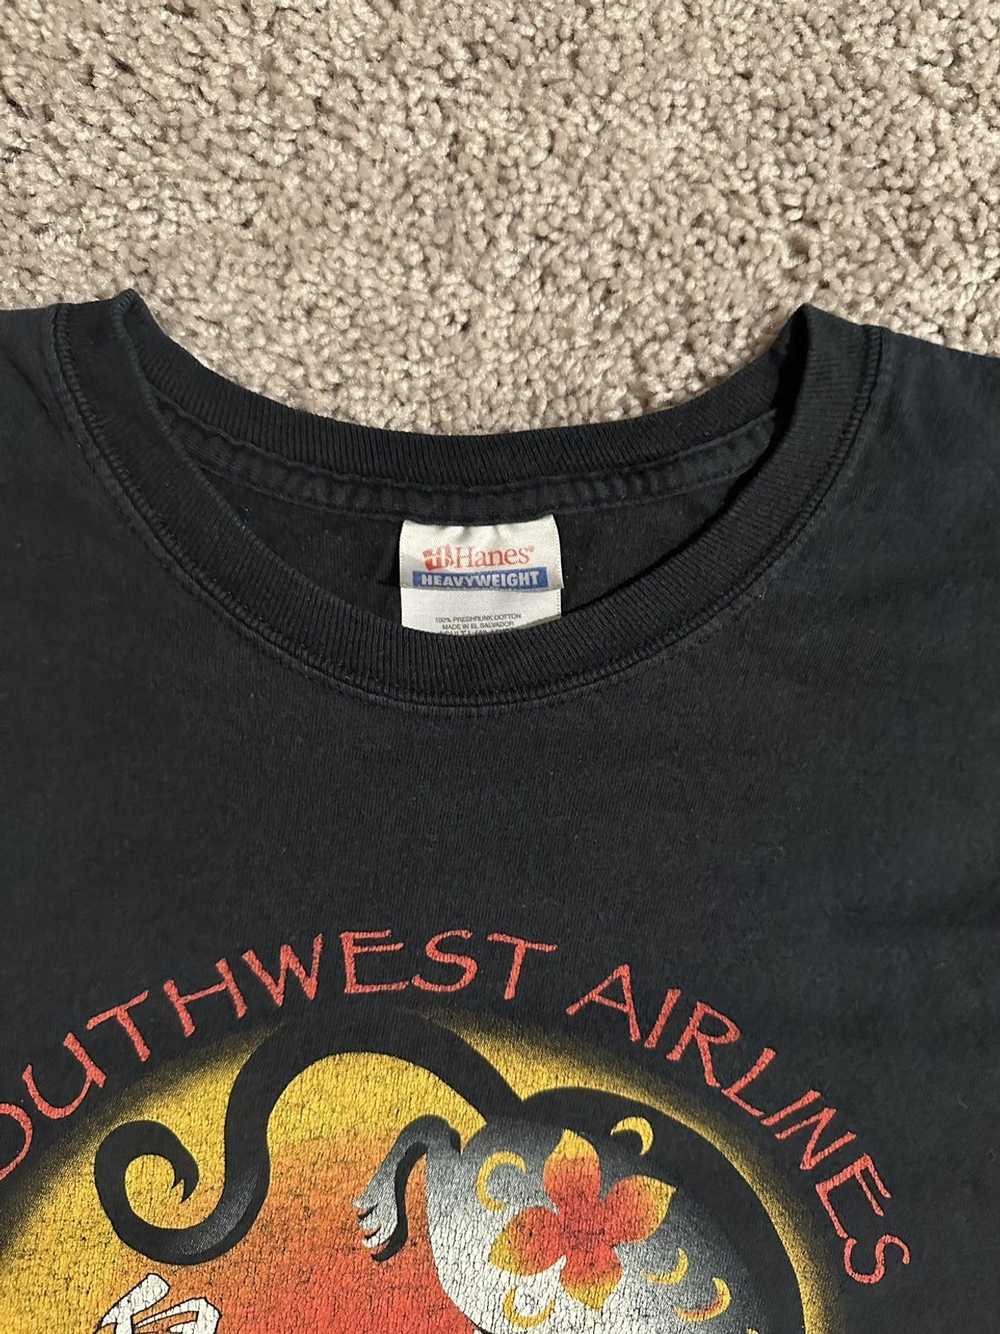 Vintage Vintage Southwest Airlines Tshirt - image 3